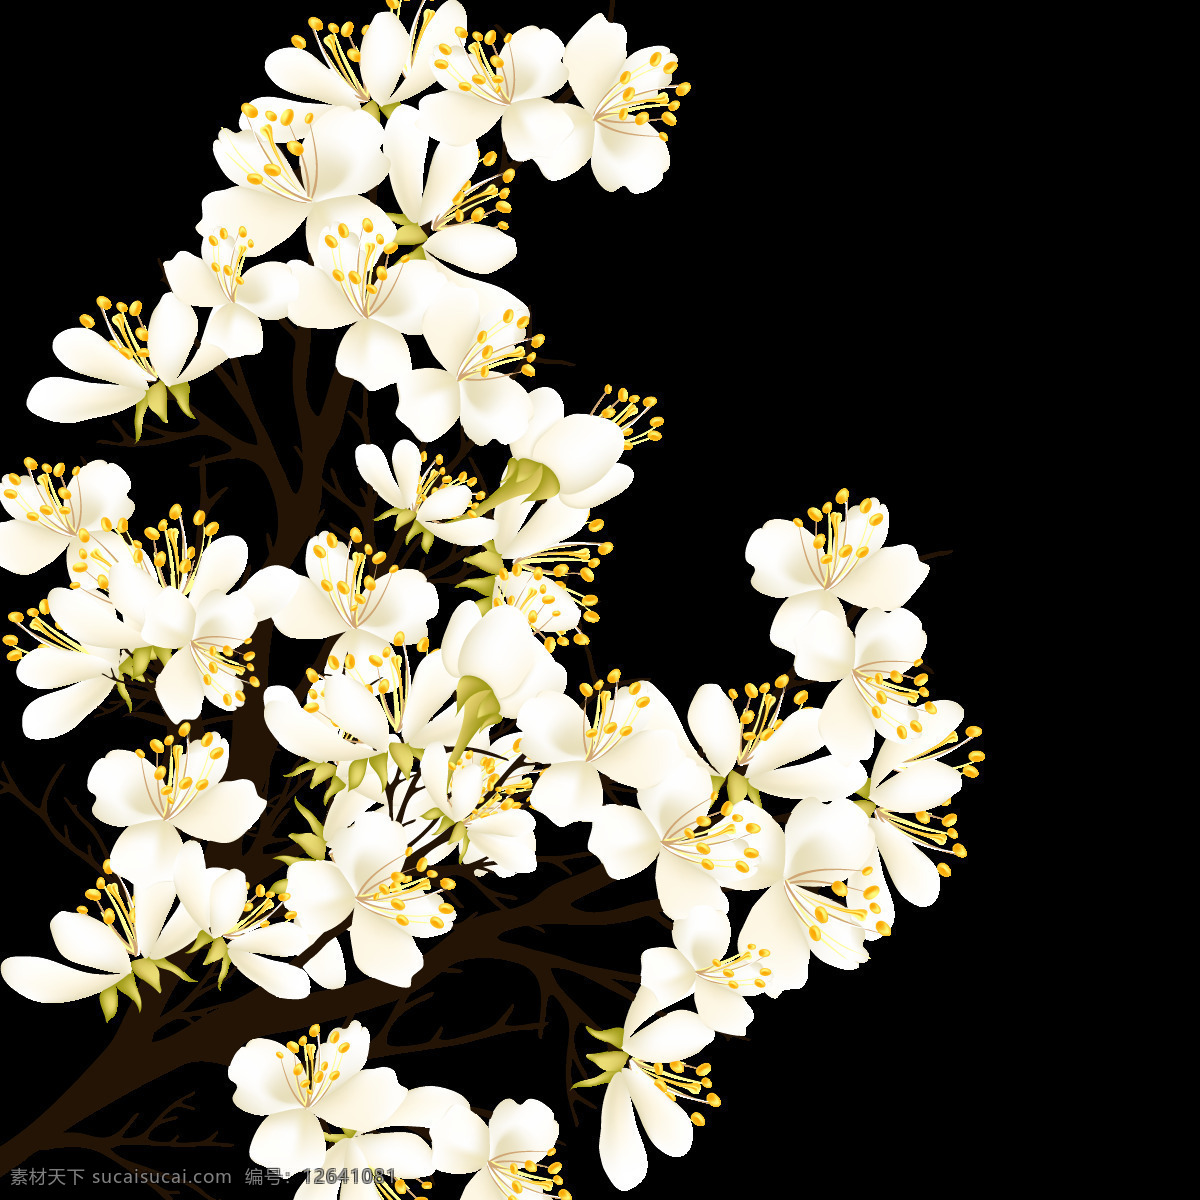 精美 水彩 花枝 图案 元素 边框素材 创意素材 花草图案 花朵图案 花树 花纹图案 时尚图案